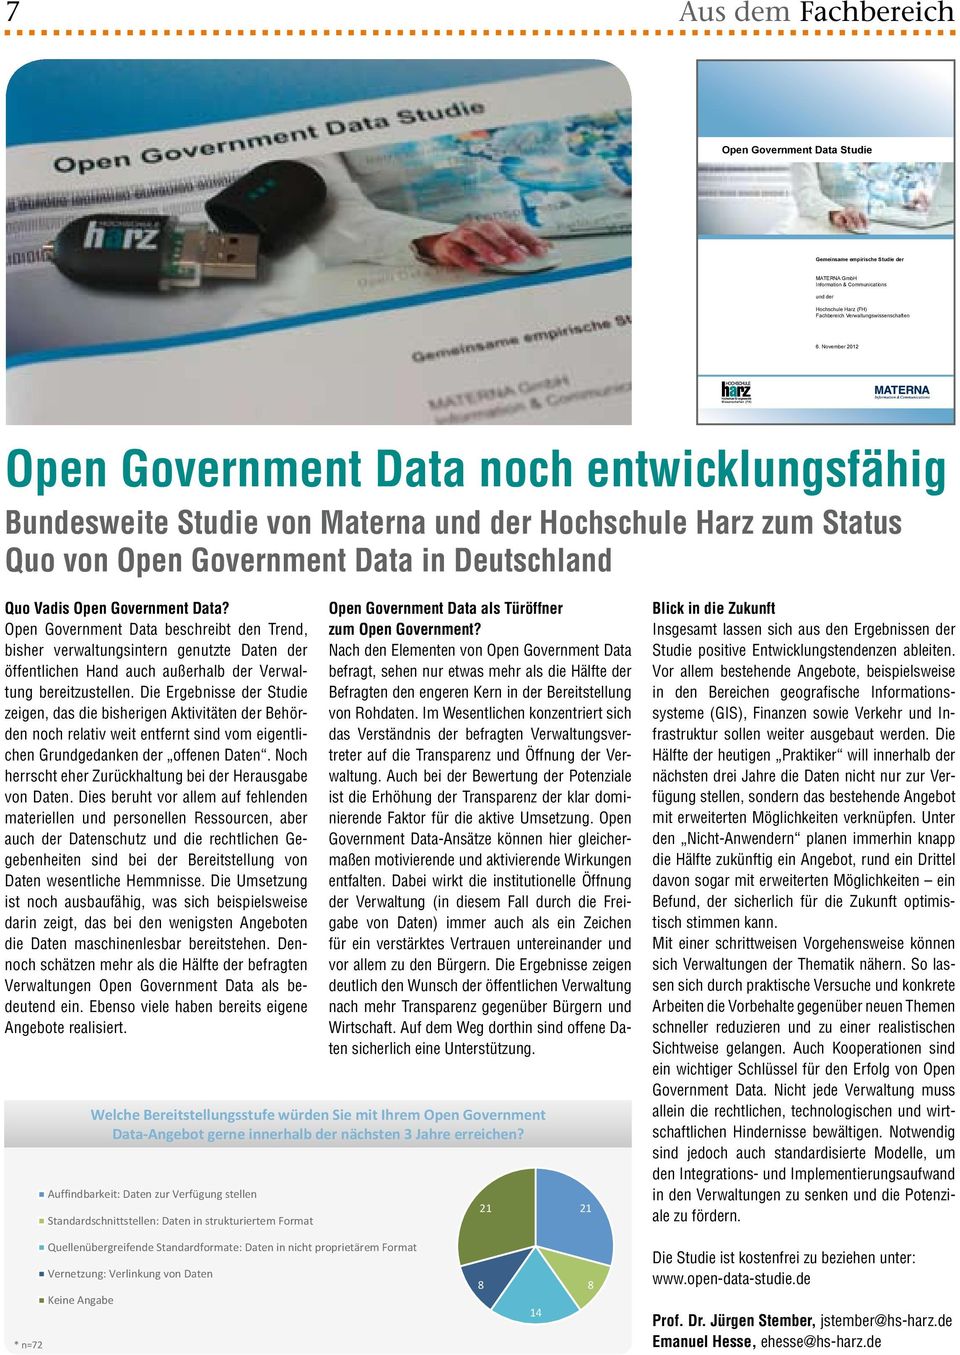 Open Government Data beschreibt den Trend, bisher verwaltungsintern genutzte Daten der öffentlichen Hand auch außerhalb der Verwaltung bereitzustellen.